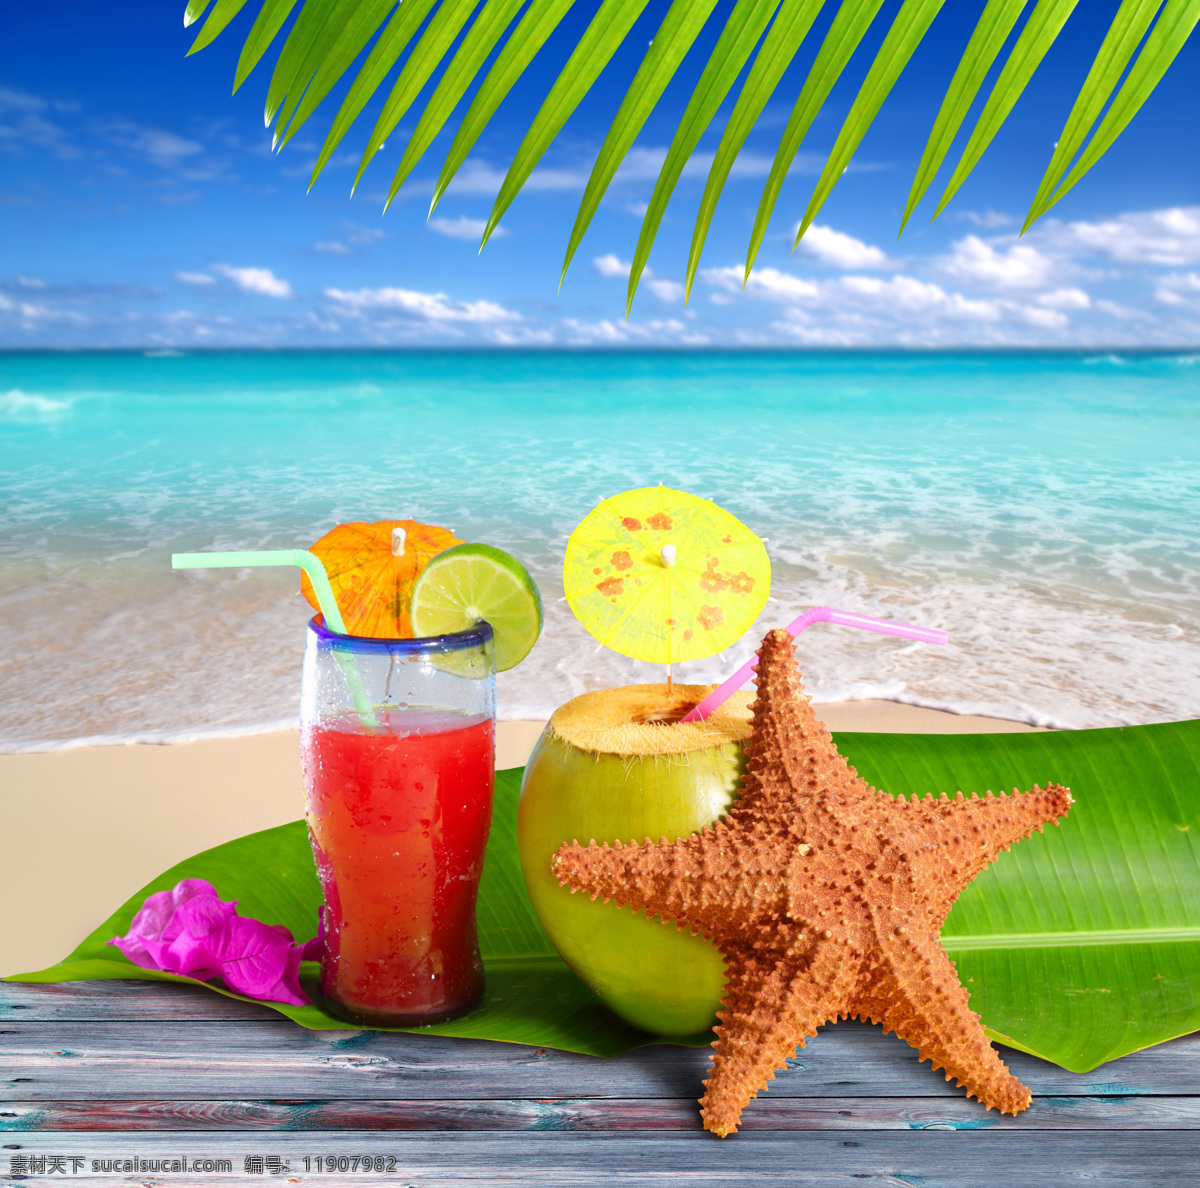 海滩 旁 果汁饮料 椰子汁 海星 美丽海滩风景 水果鸡尾酒 鸡尾酒 玻璃杯子 酒水饮料 餐饮美食 蓝色